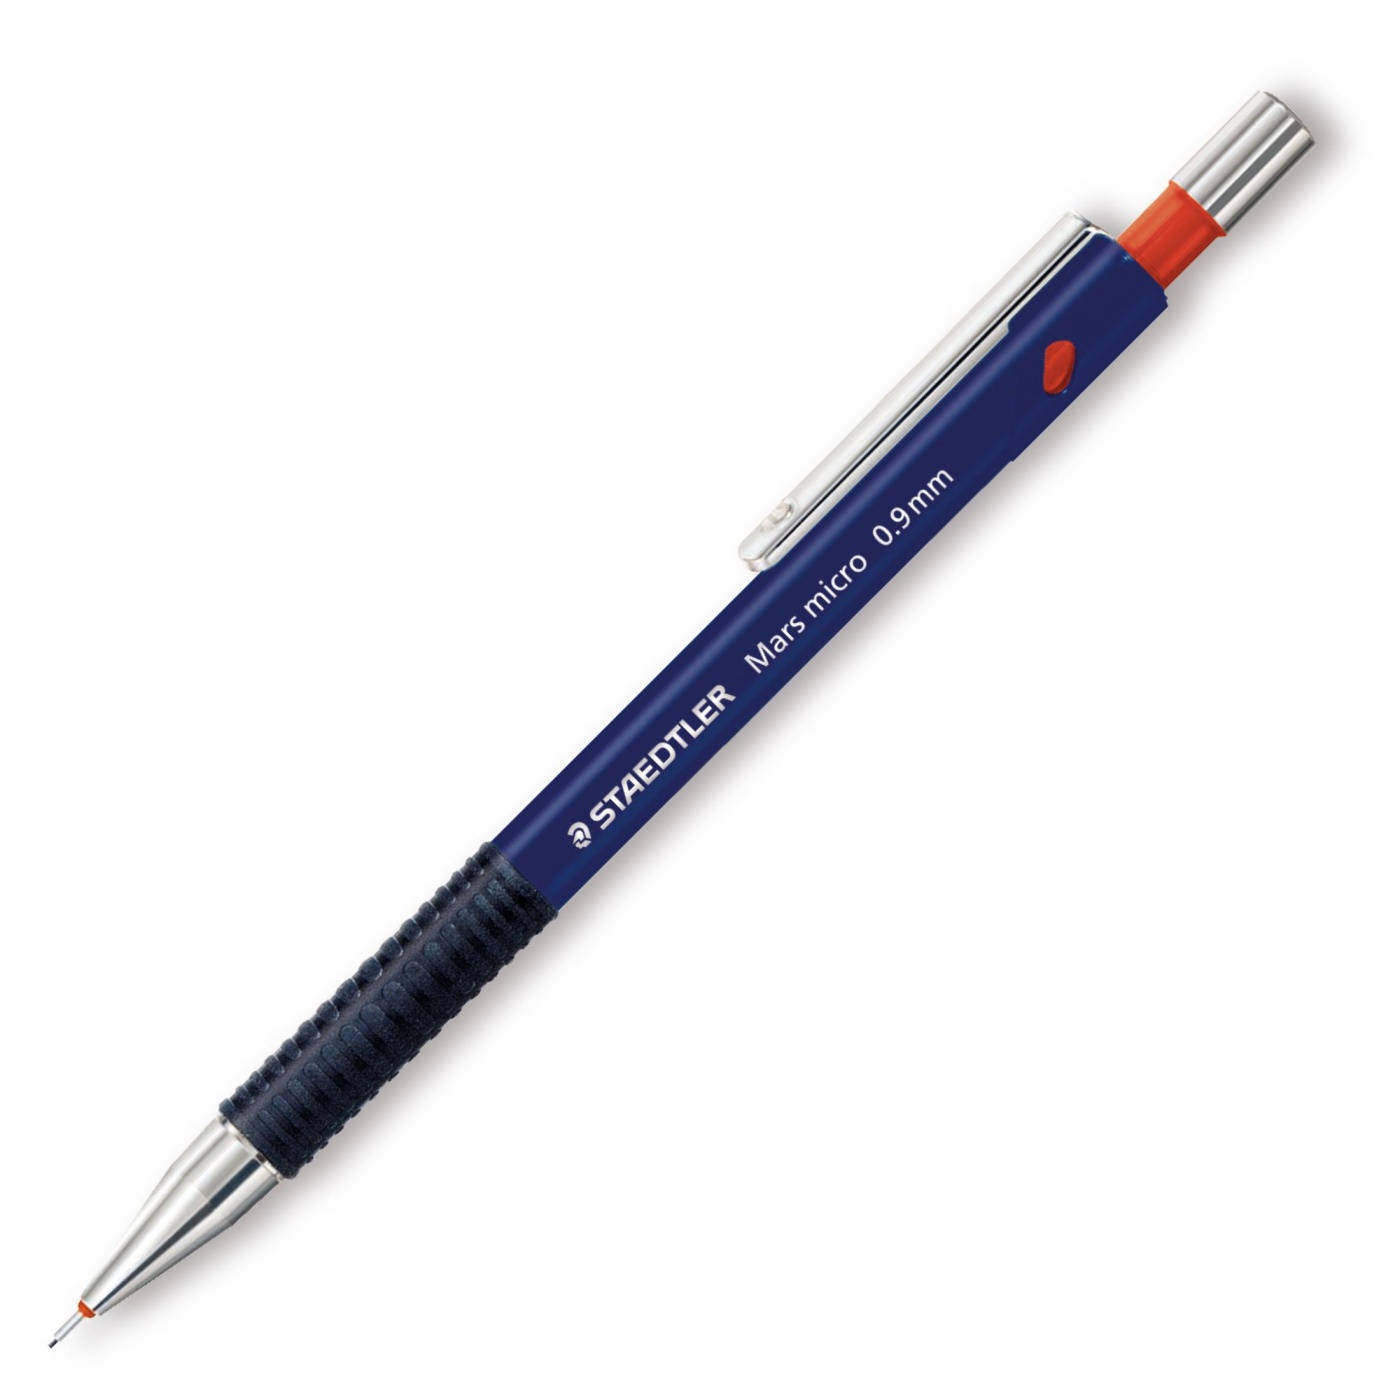 Карандаш 0.7. Карандаш механический Staedtler Mars Micro. Автоматический карандаш 0.9. 0.5 Или 0.7 мм карандаш. Ручка+карандаш 0,7 al 4842.